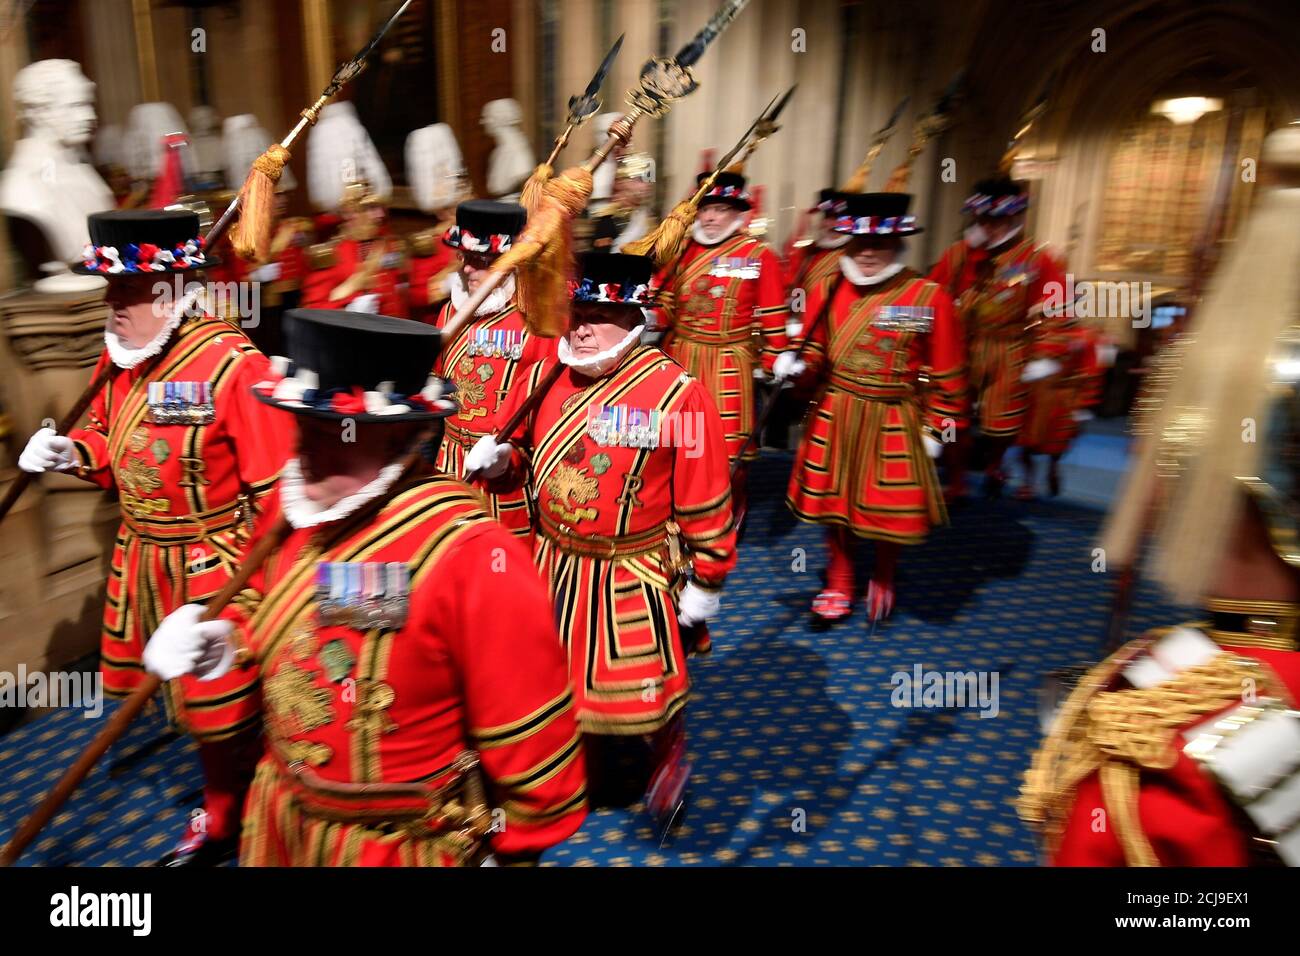 Mitglieder der Yeoman Guard kommen zur Staatseröffnung des Parlaments in den Houses of Parliament in London, Großbritannien, 19. Dezember 2019. REUTERS/Toby Melville/Pool Stockfoto